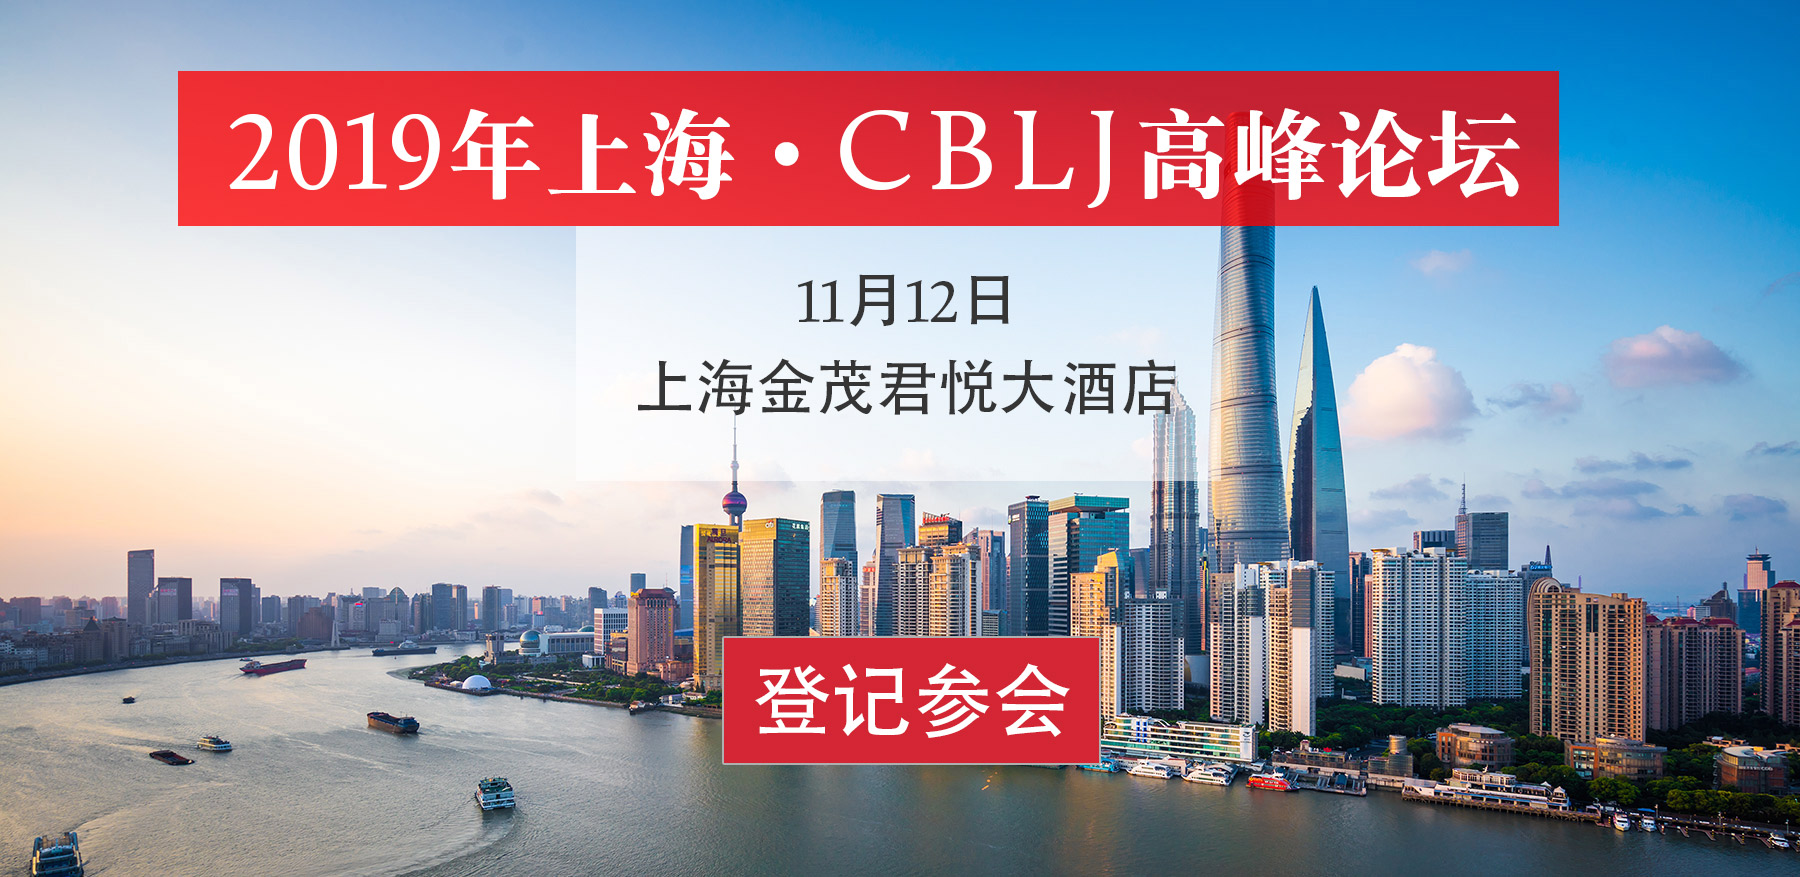 2019年上海·CBLJ高峰论坛